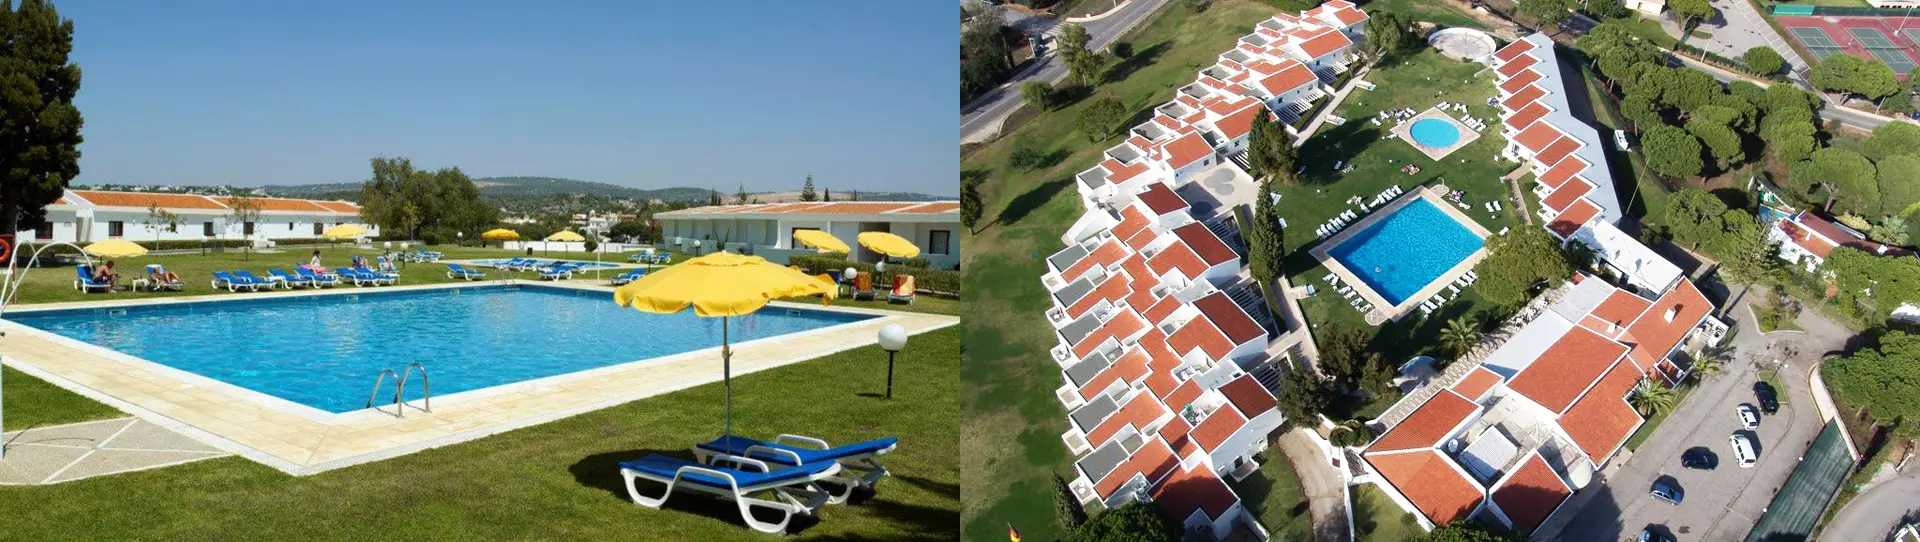 Portugal golf holidays - Hotel Apartamento do Golfe - Photo 1